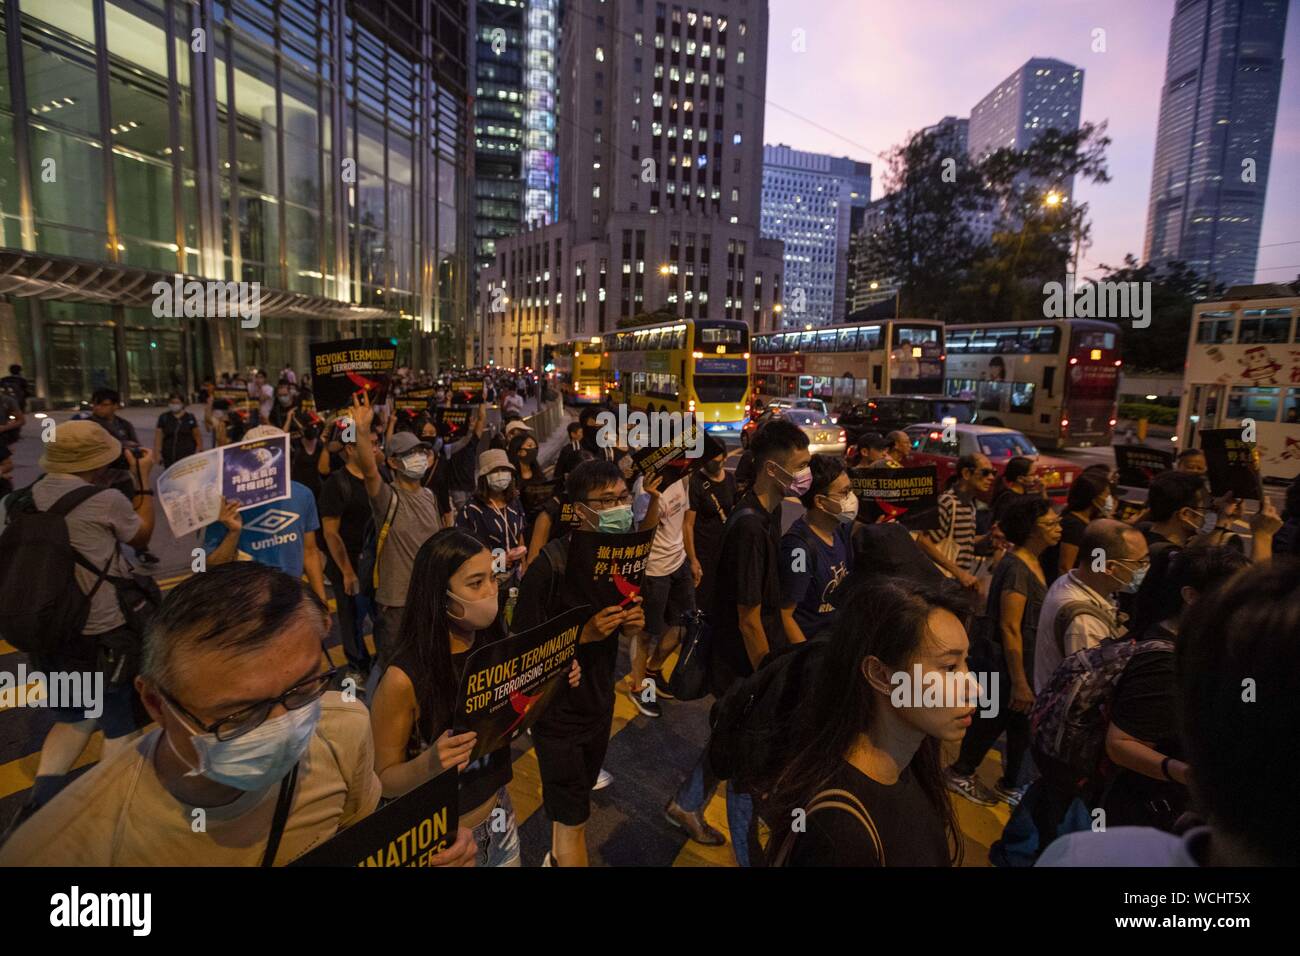 Agosto 28, 2019, Hong Kong, Cina: centinaia di dimostranti si sono riuniti a Hong Kong di Edimburgo per esprimere la loro opposizione alla terminazione dei lavoratori nel settore aeronautico a causa del loro sostegno della pro movimento democratico. Il rally ha sottolineato l importanza del diritto del lavoratore alla libertà di parola e hanno chiesto che essi essere reintegrato a loro positons dell'occupazione. Dopo il rally che i partecipanti hanno marciato al Pacific Place complesso. (Credito Immagine: © Adryel Talamantes/ZUMA filo) Foto Stock